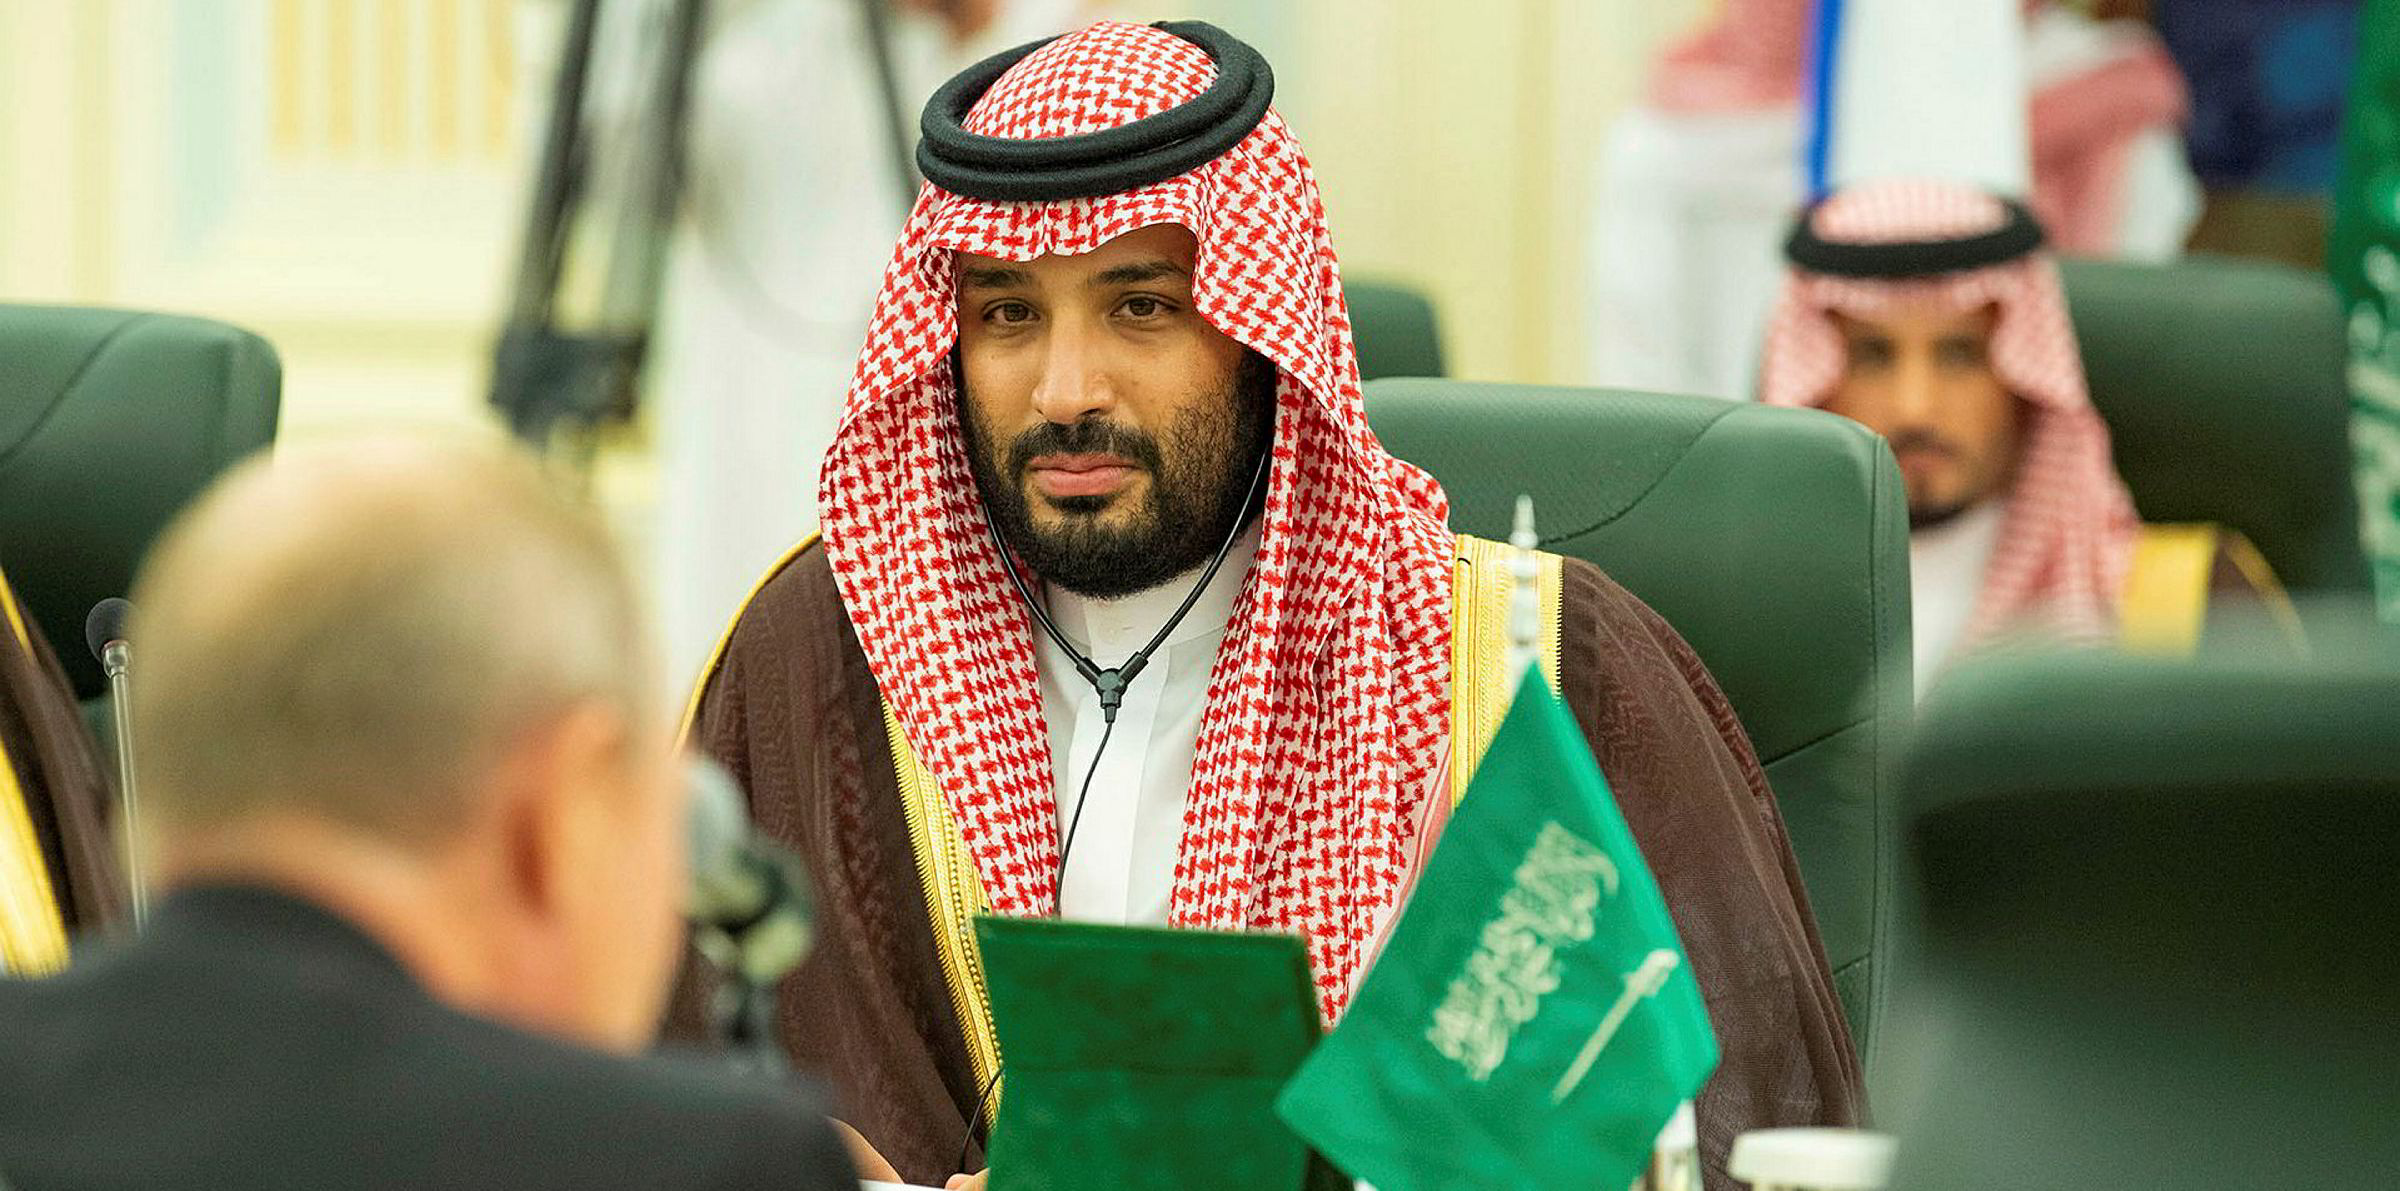 Имена саудовской аравии. Мухаммед ибн Салман Аль Сауд. Саудовский принц Мухаммед Бен Салман. Наследный принц Мухаммед Бин Салман. Принц Саудовской Аравии Мухаммед.